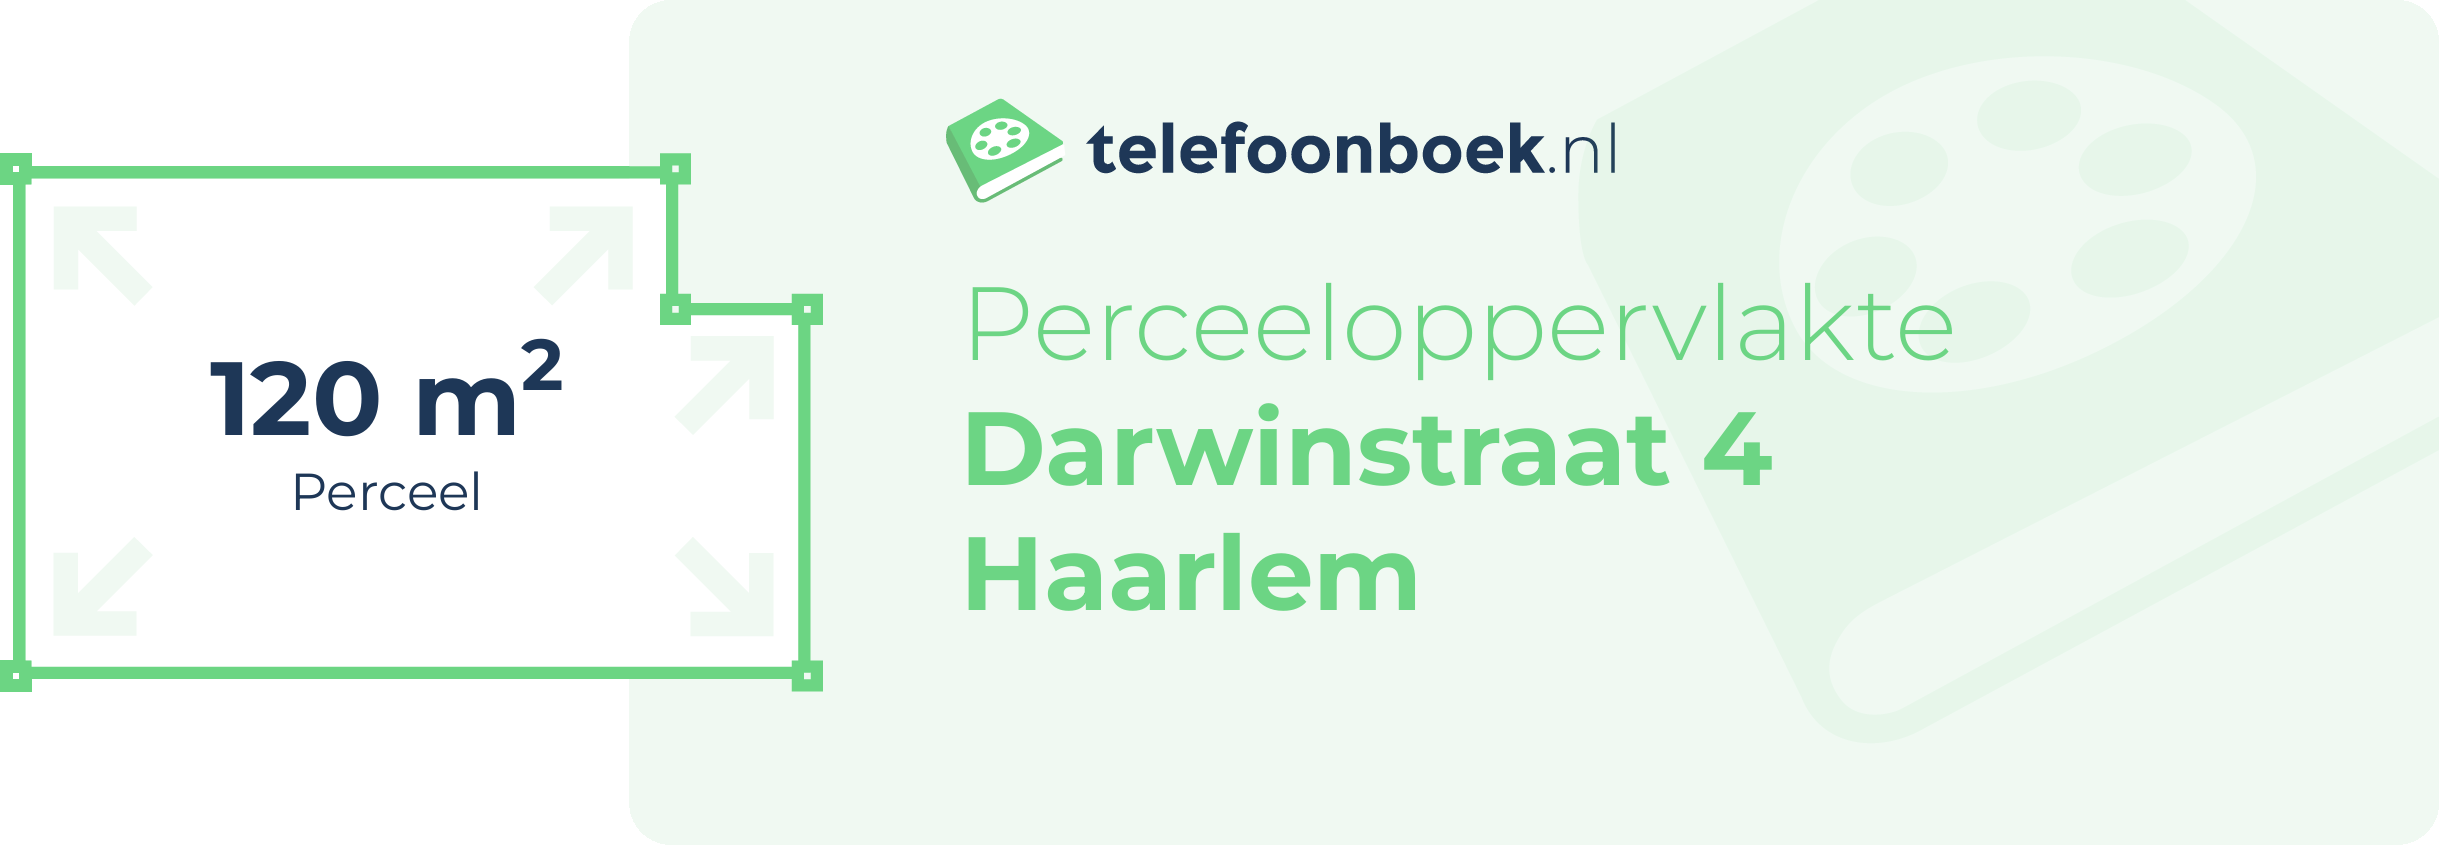 Perceeloppervlakte Darwinstraat 4 Haarlem